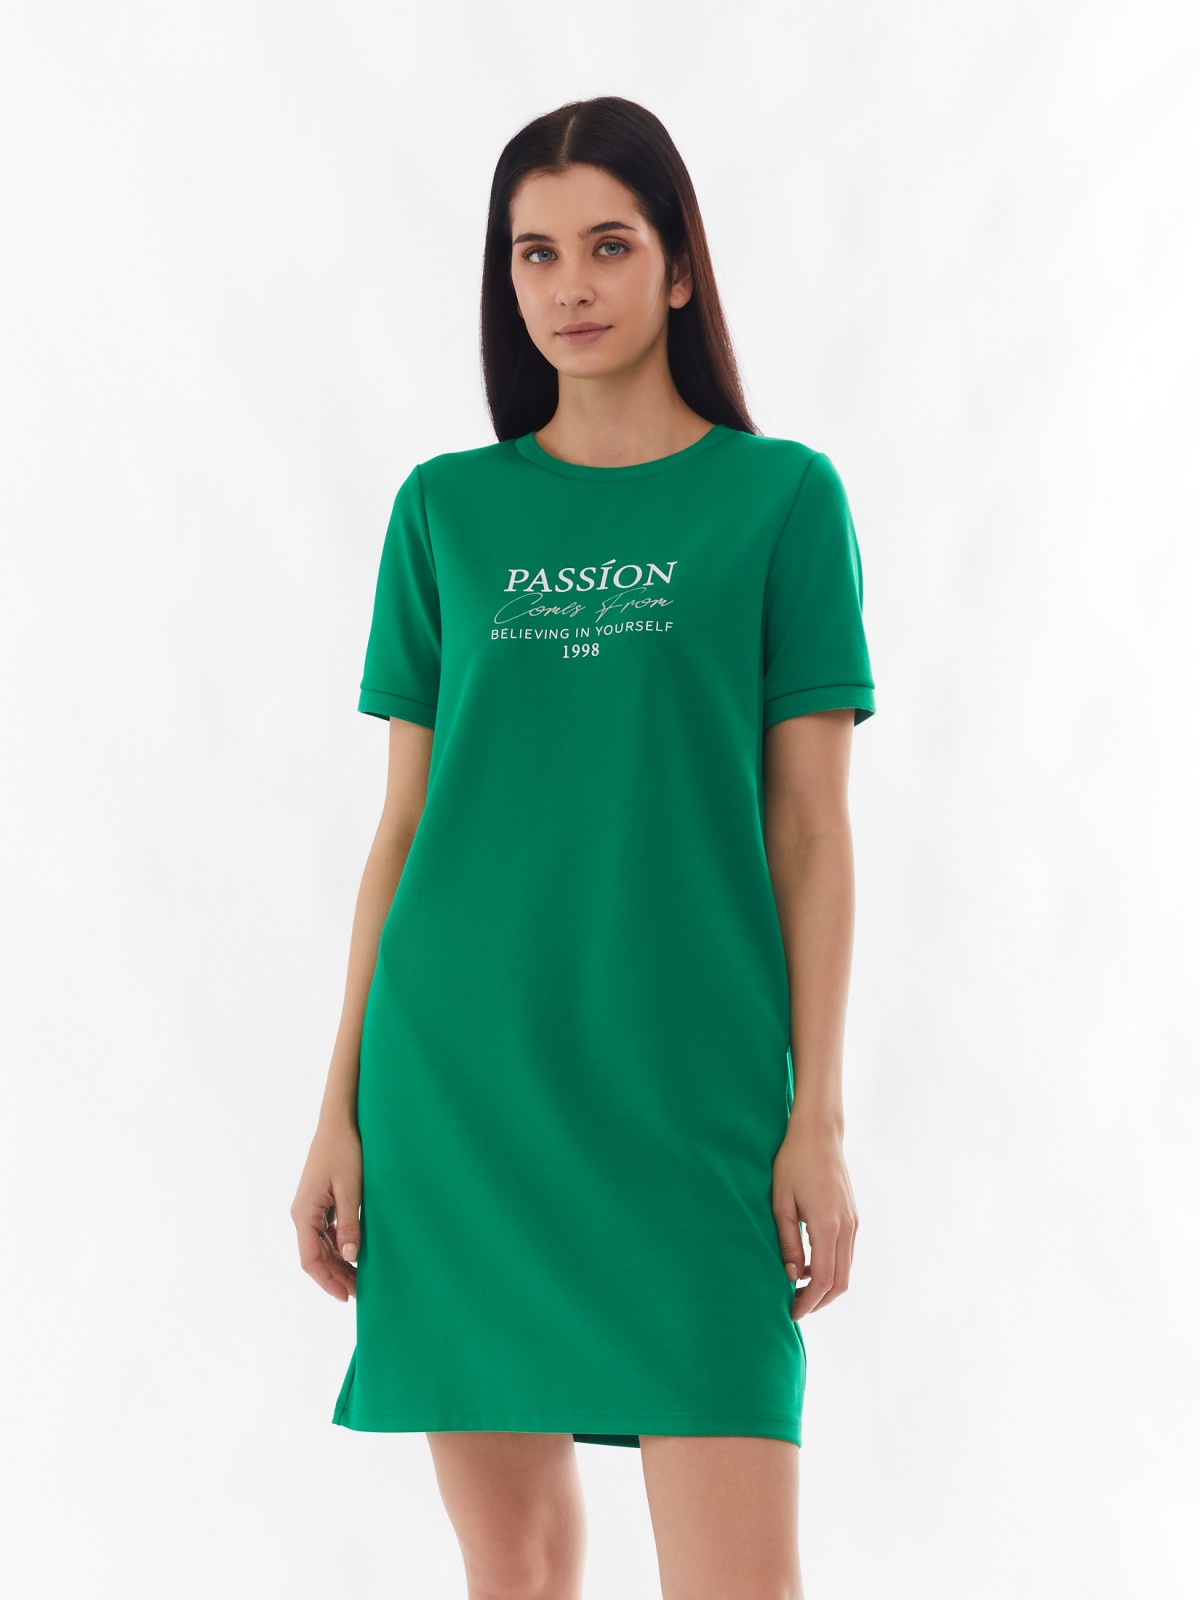 Платье-футболка с коротким рукавом и принтом-надписью zolla 024138135132, цвет зеленый, размер S